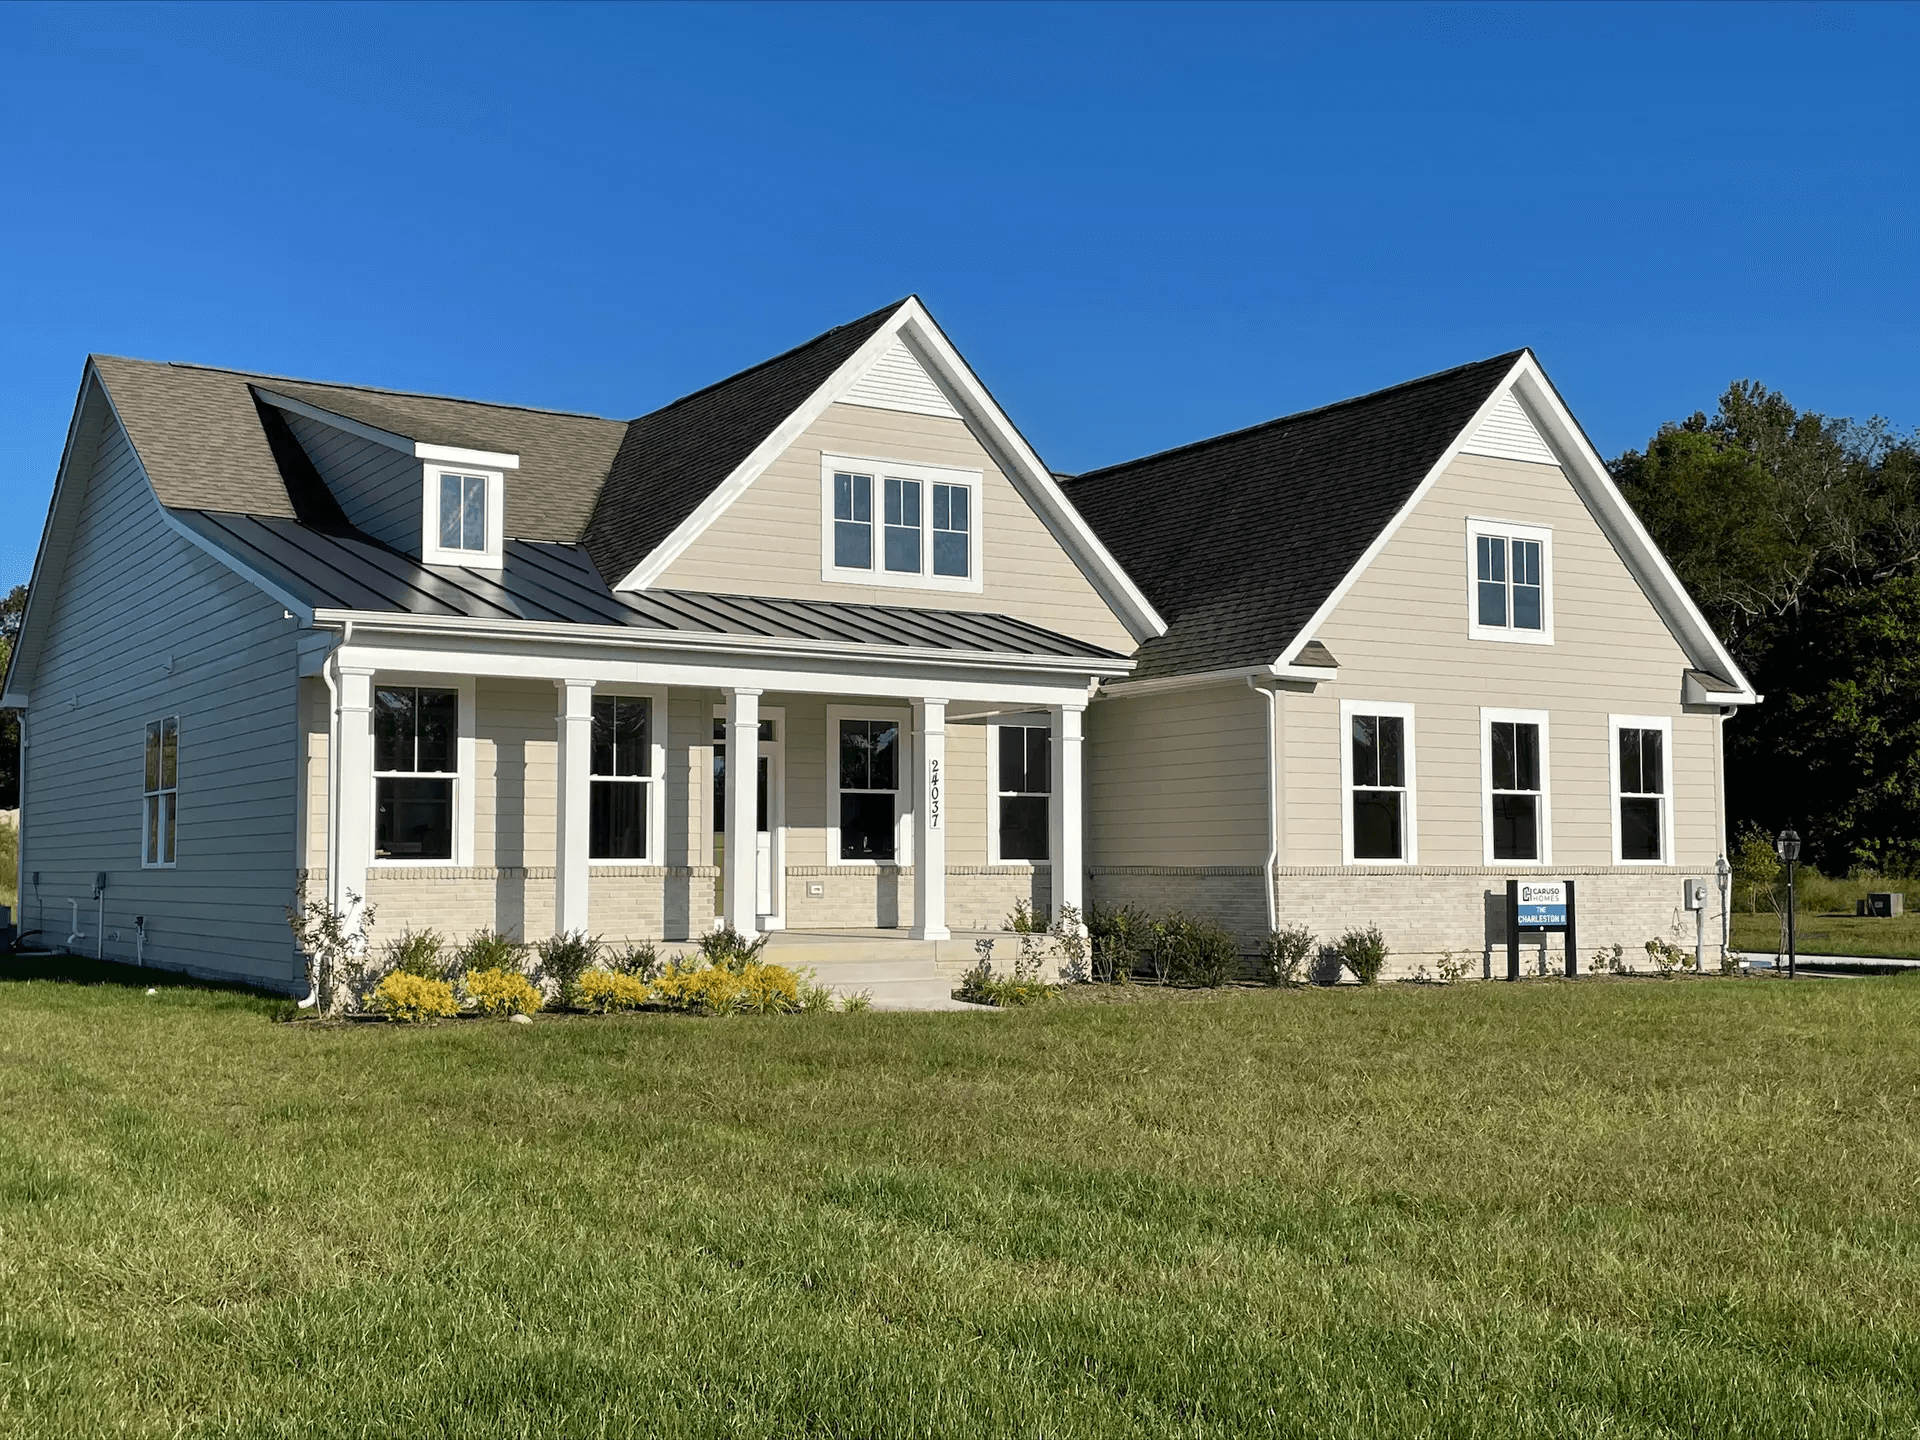 Ingrams Point Model Home in Millsboro, DE